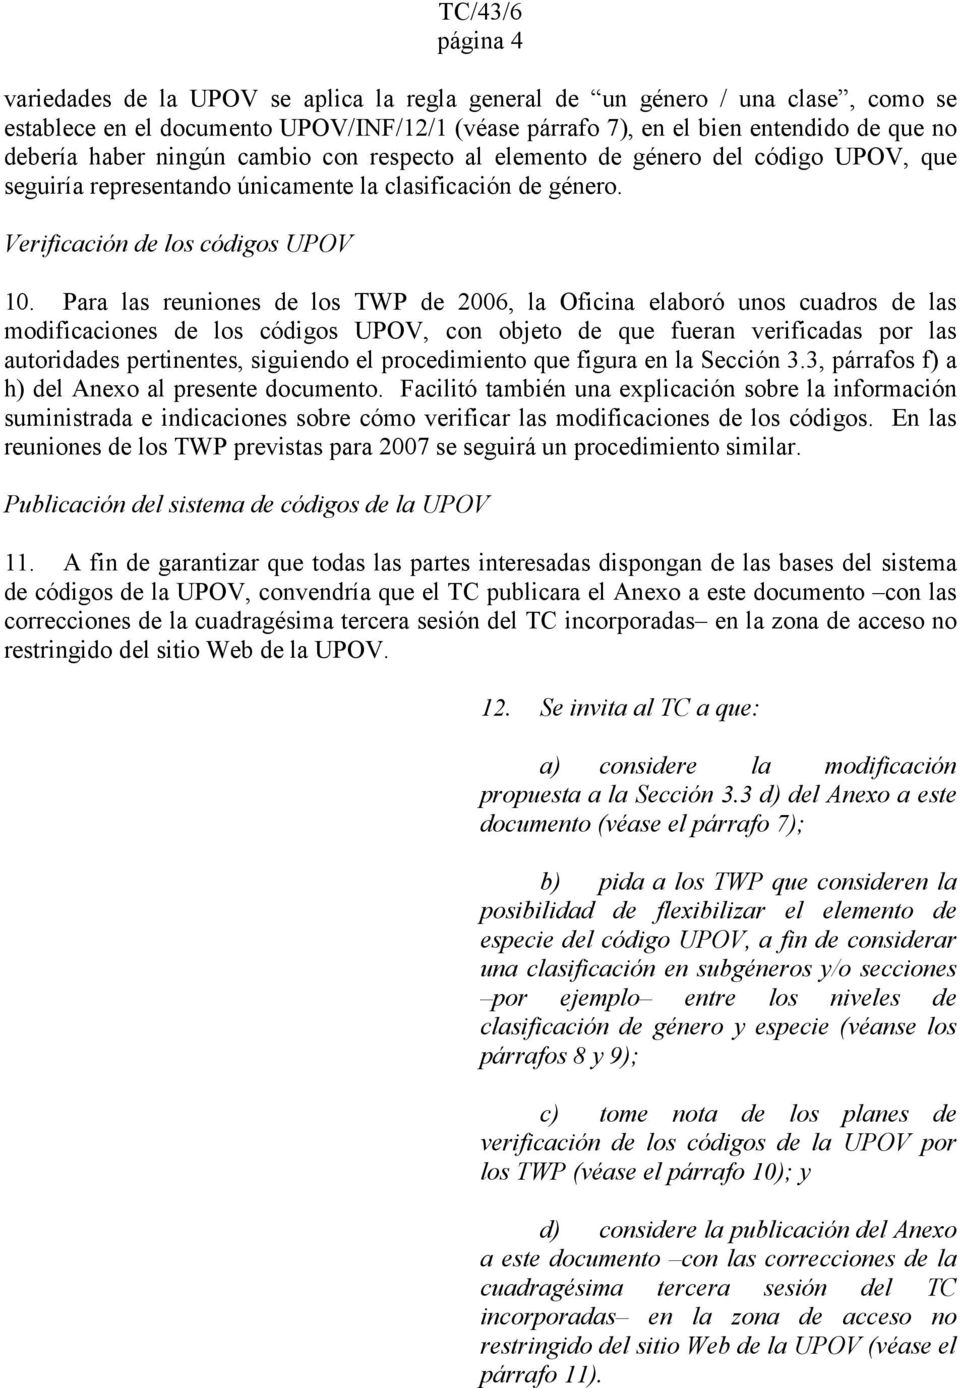 Para las reuniones de los TWP de 2006, la Oficina elaboró unos cuadros de las modificaciones de los códigos UPOV, con objeto de que fueran verificadas por las autoridades pertinentes, siguiendo el